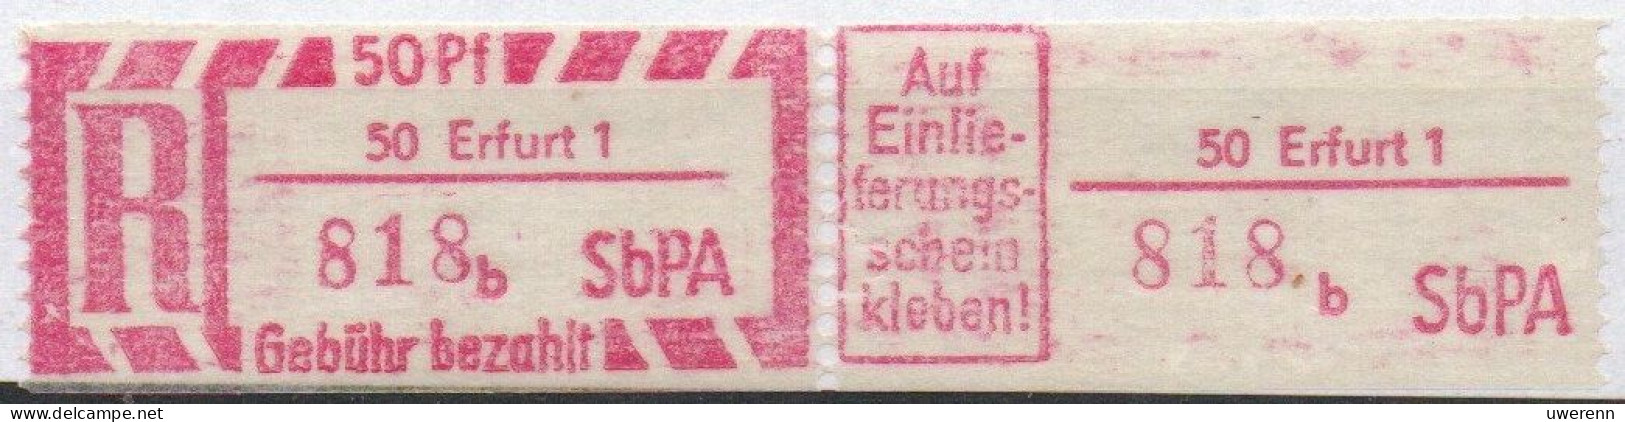 DDR Einschreibemarke Erfurt SbPA Postfrisch, EM2B-50-1bII(1) RU (a) Zh (Mi 2C) - Labels For Registered Mail